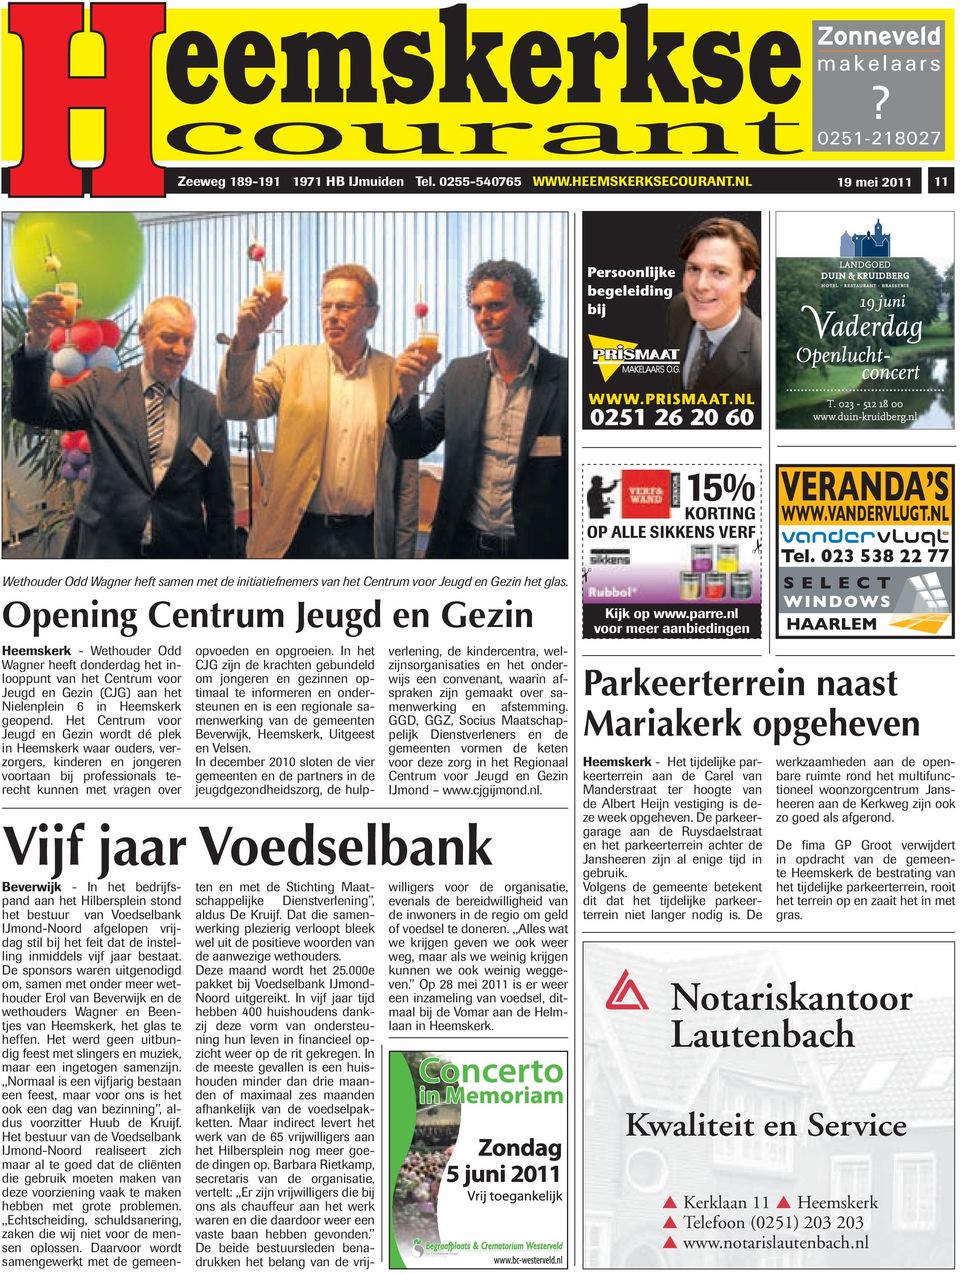 Opening Centrum Jeugd en Gezin Heemskerk - Wethouder Odd Wagner heeft donderdag het inlooppunt van het Centrum voor Jeugd en Gezin (CJG) aan het Nielenplein 6 in Heemskerk geopend.